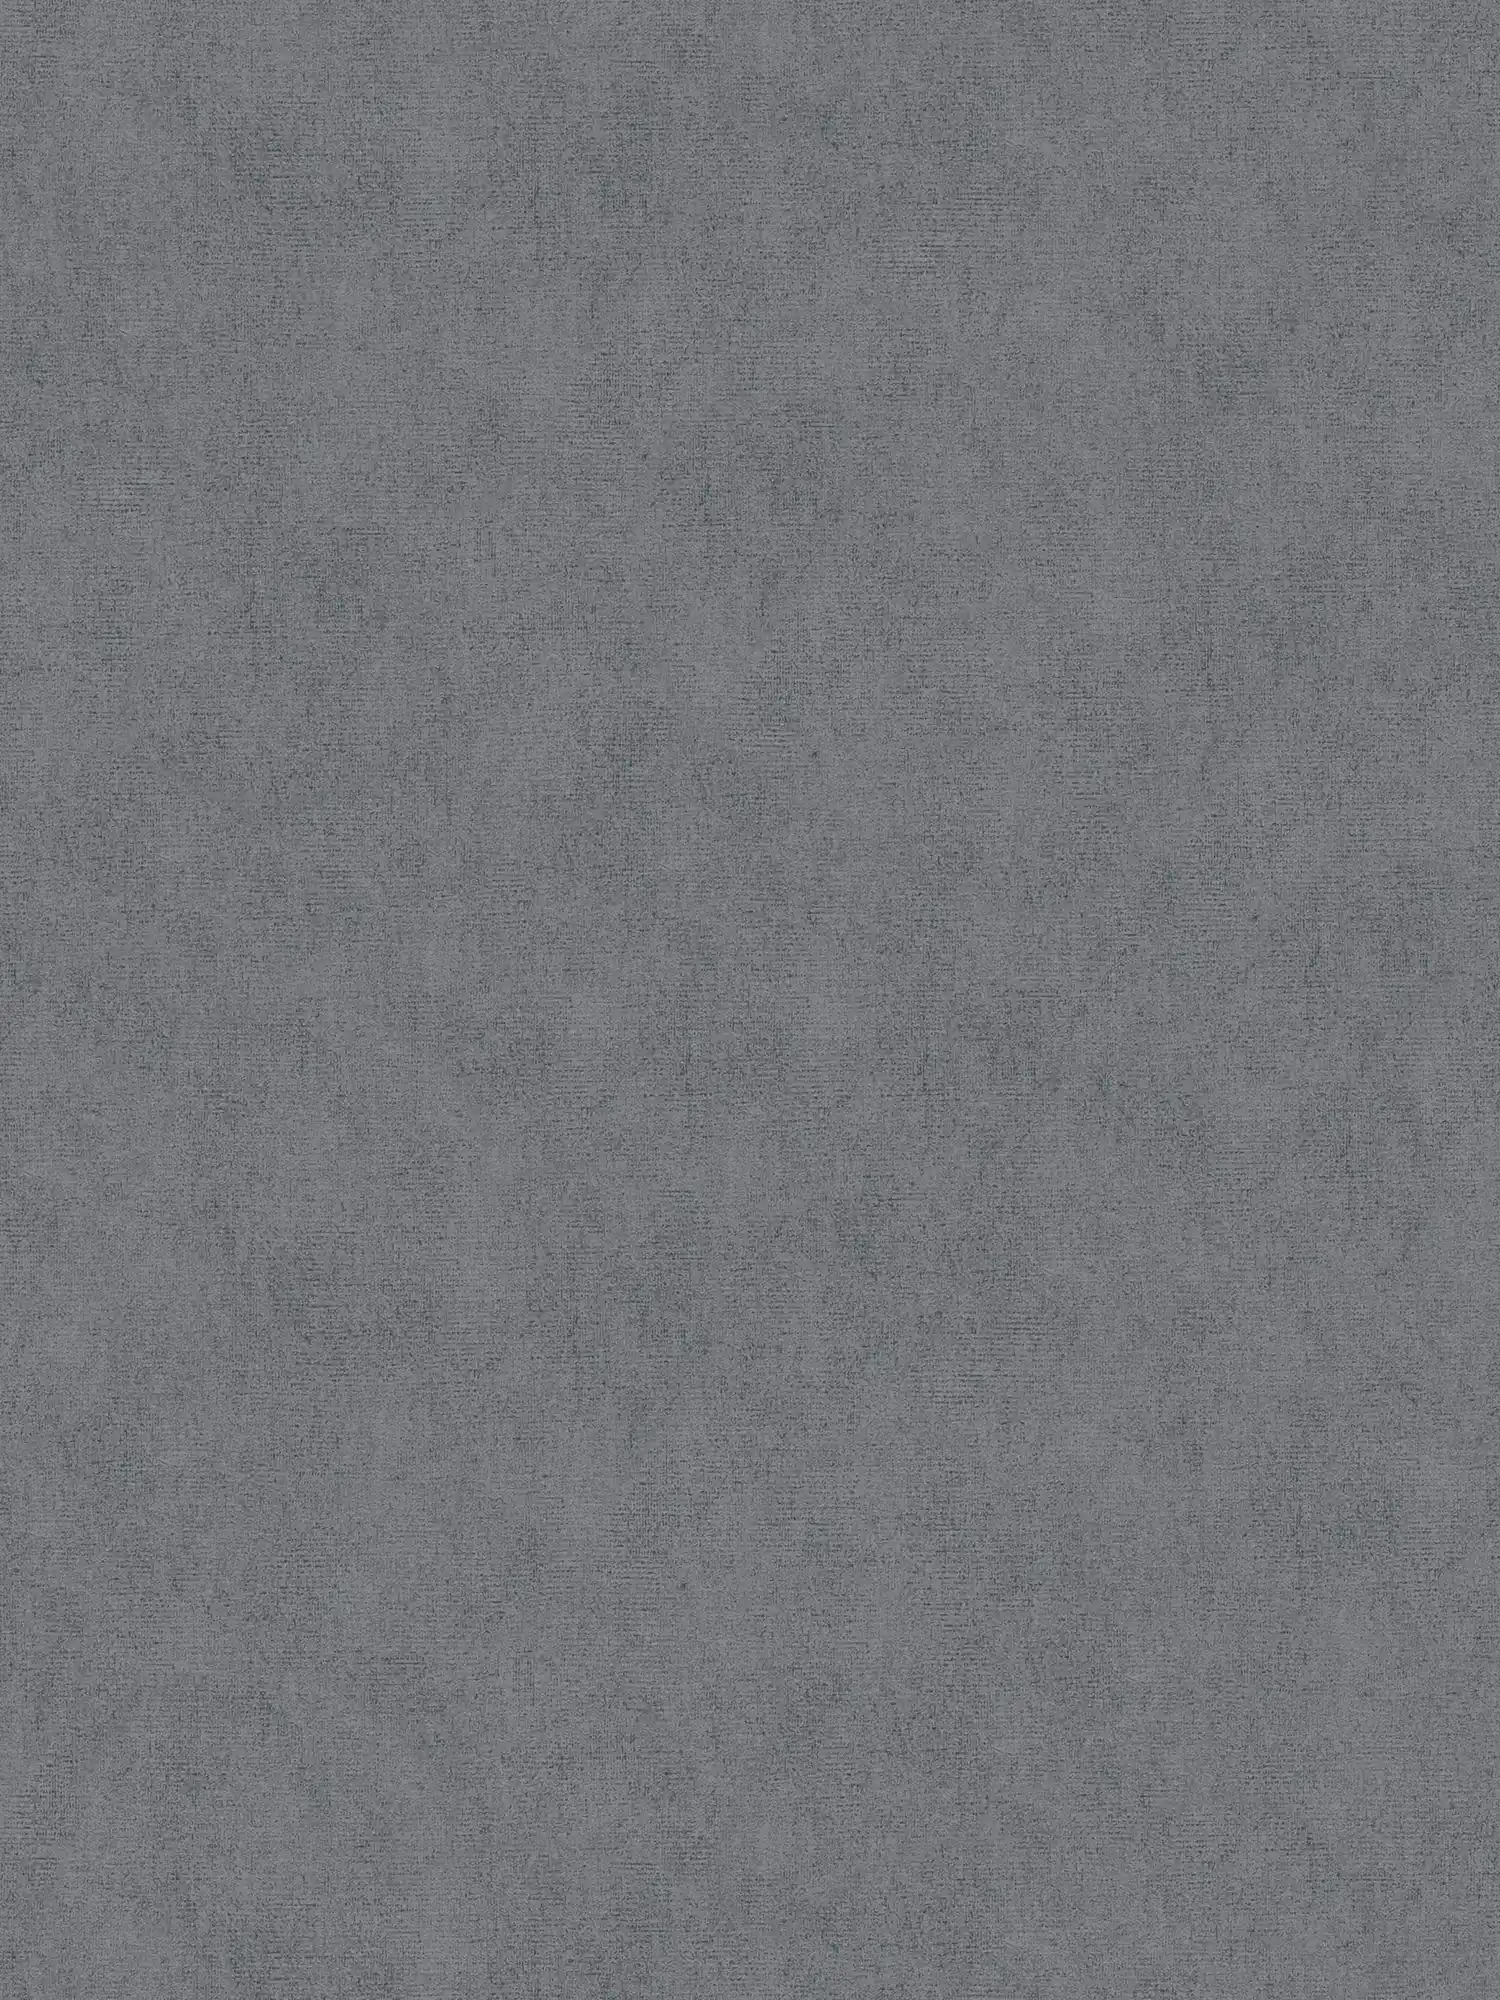 Papier peint uni gris foncé chiné avec effet chatoyant - gris
